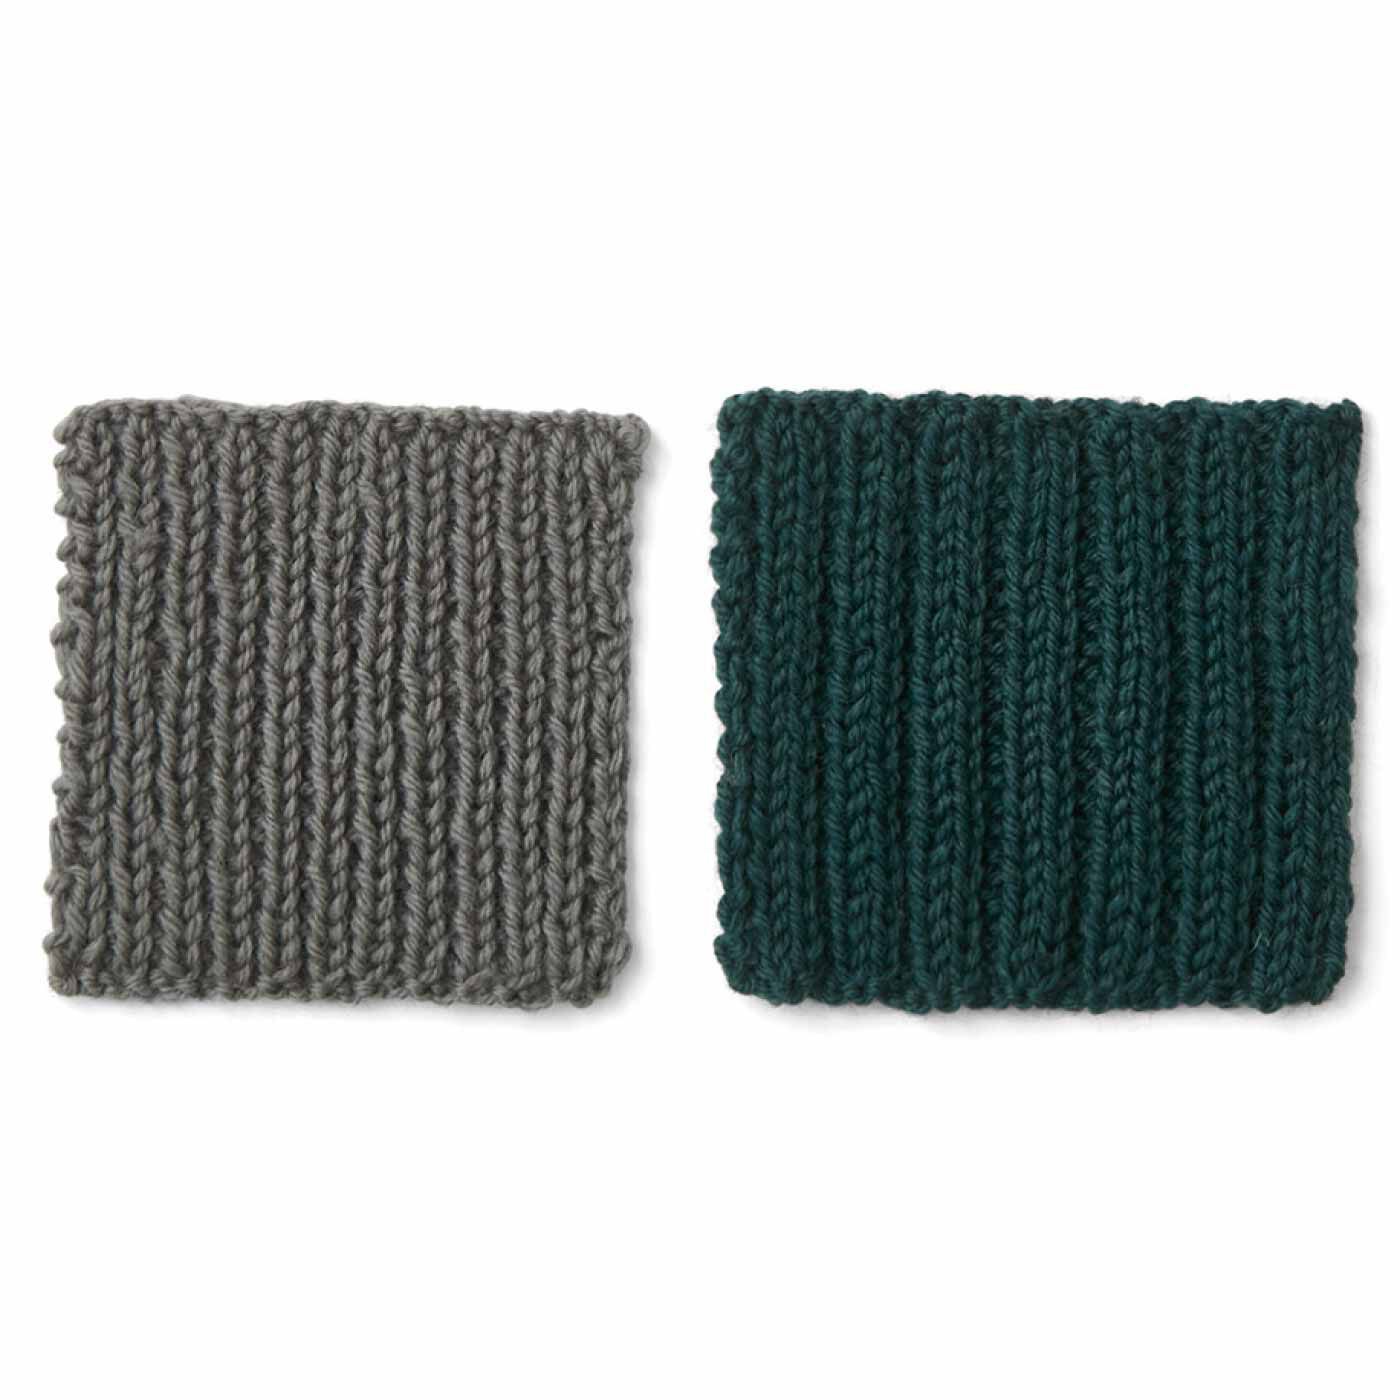 クチュリエ|はじめてさんのきほんのき 棒針編みてとりあしとりレッスンの会|3ヵ月目 ゴム編み